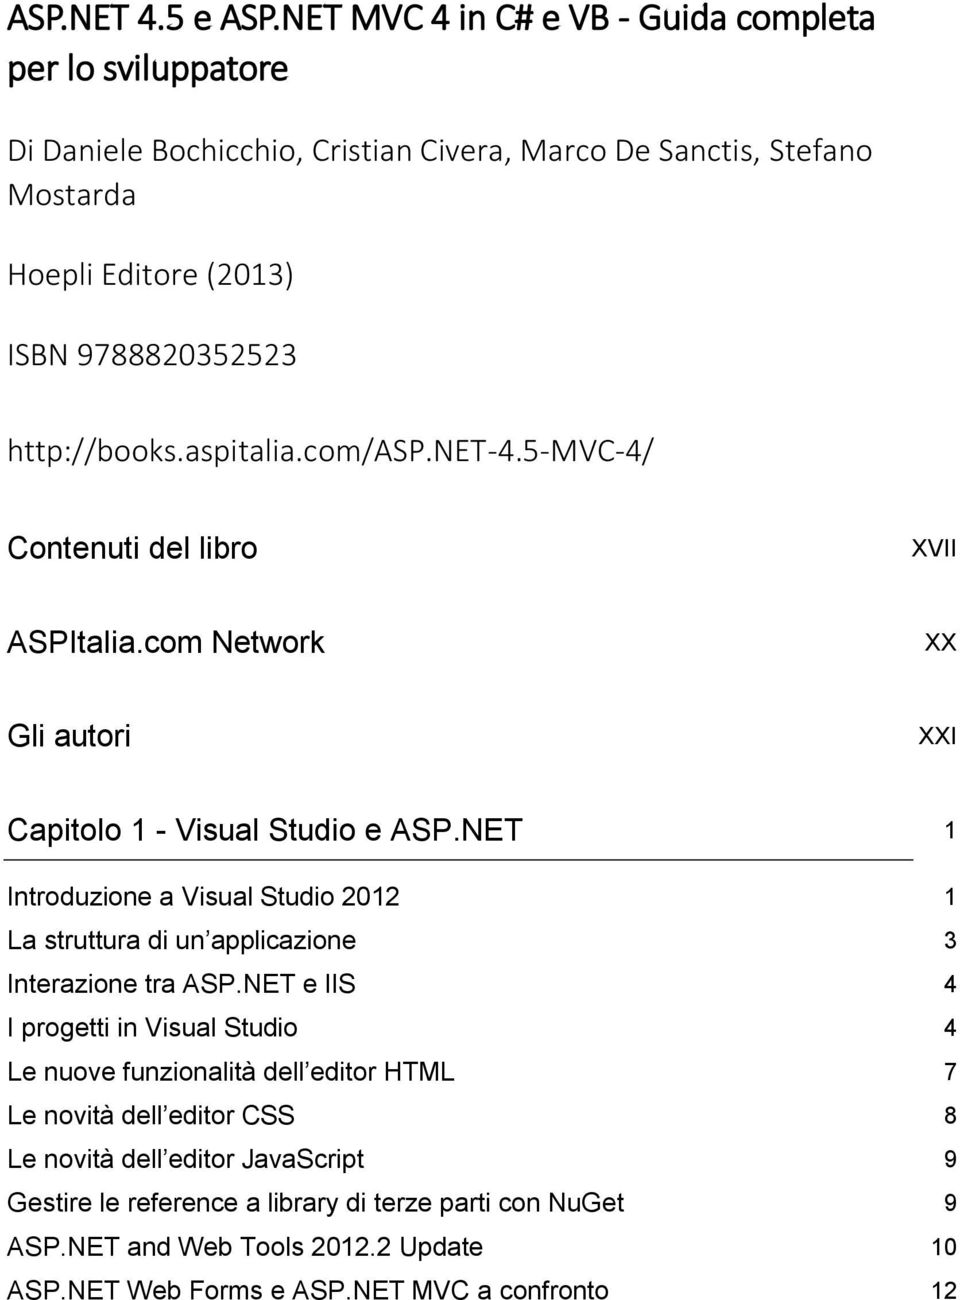 http://books.aspitalia.com/asp.net-4.5-mvc-4/ Contenuti del libro XVII ASPItalia.com Network XX Gli autori XXI Capitolo 1 - Visual Studio e ASP.